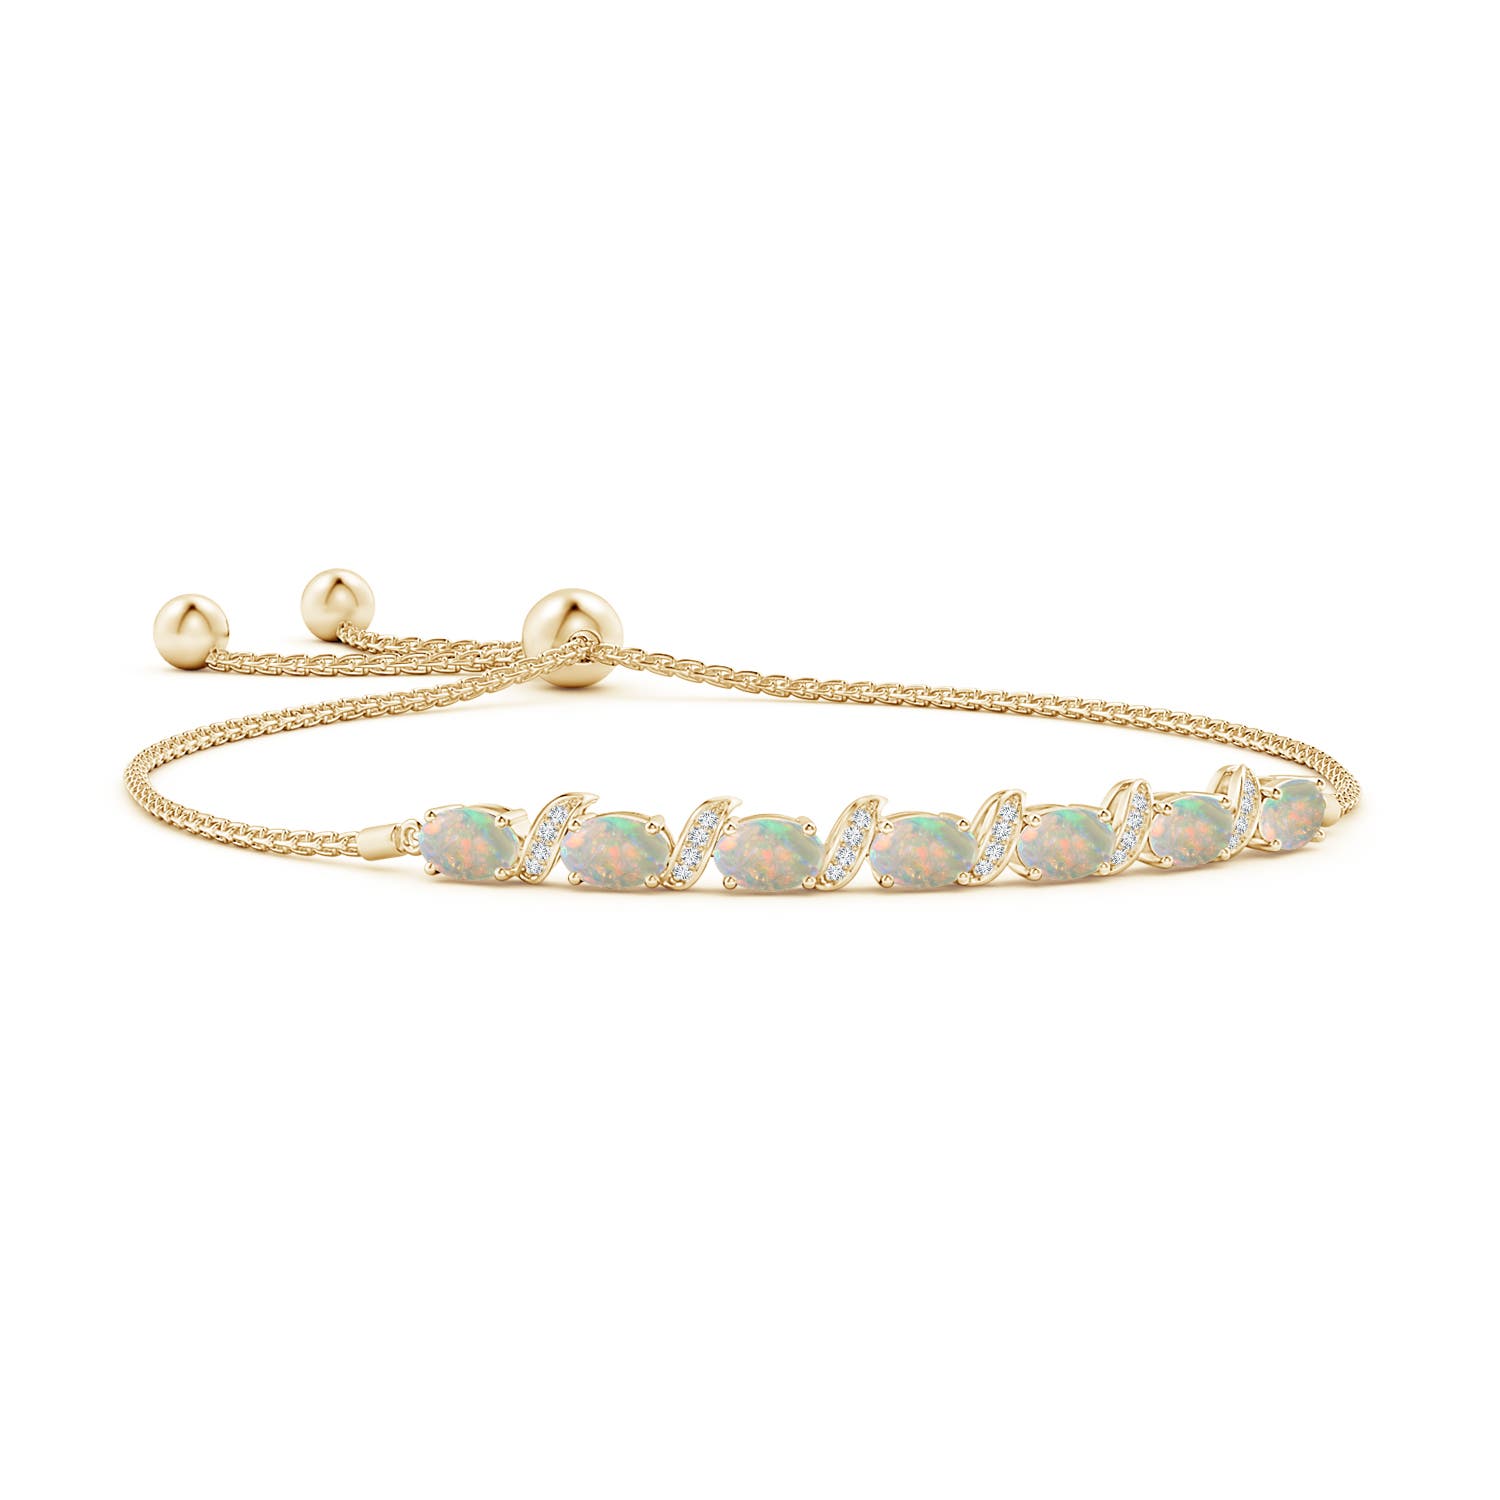 Oval Opal Bolo Bracelet with Pave-Set Diamonds | Angara